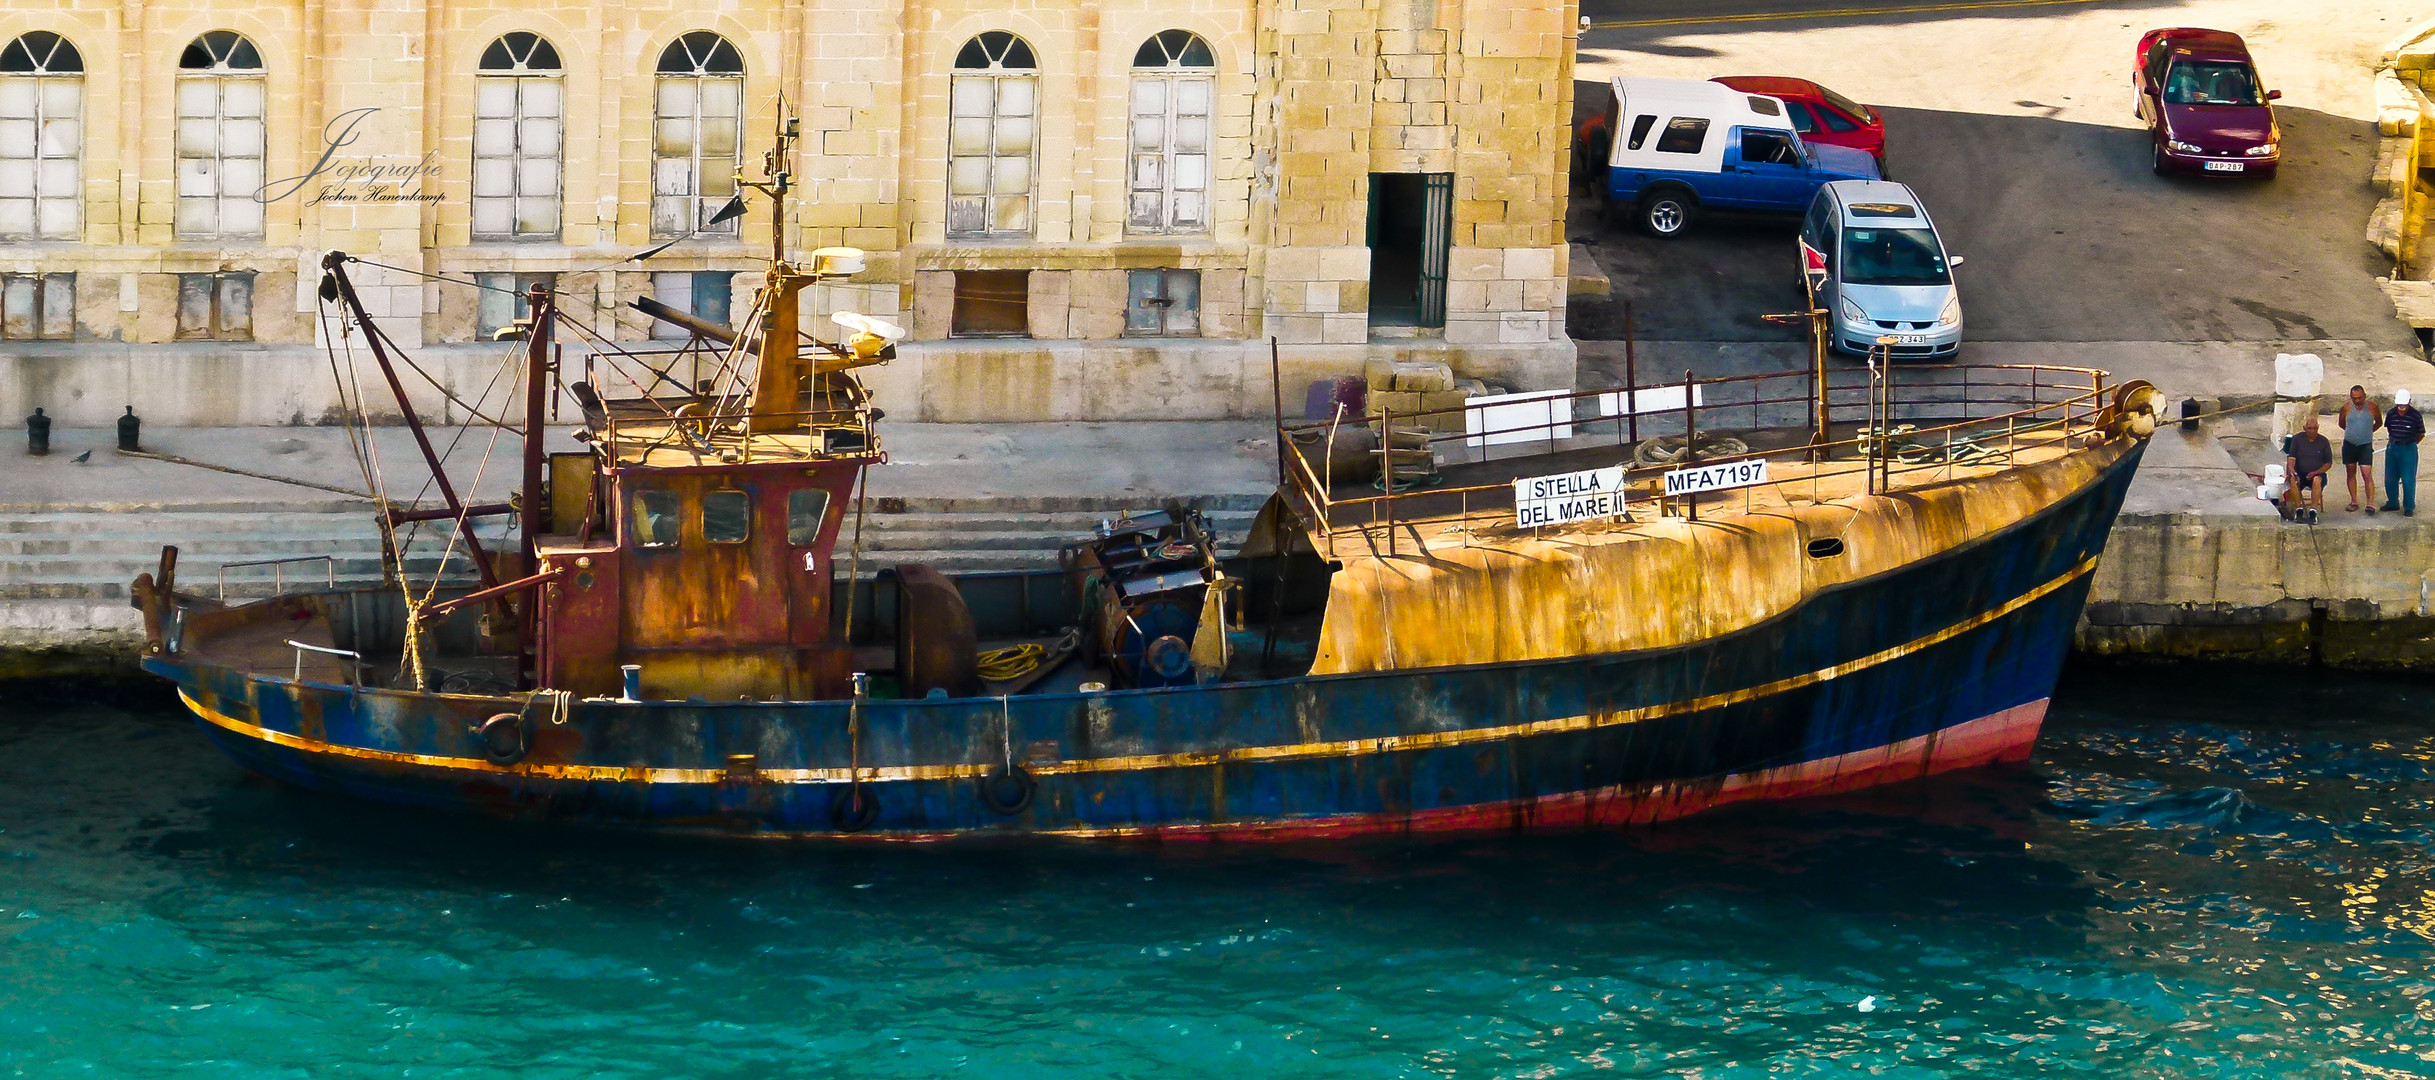 Seelenverkäufer Malta Hafen